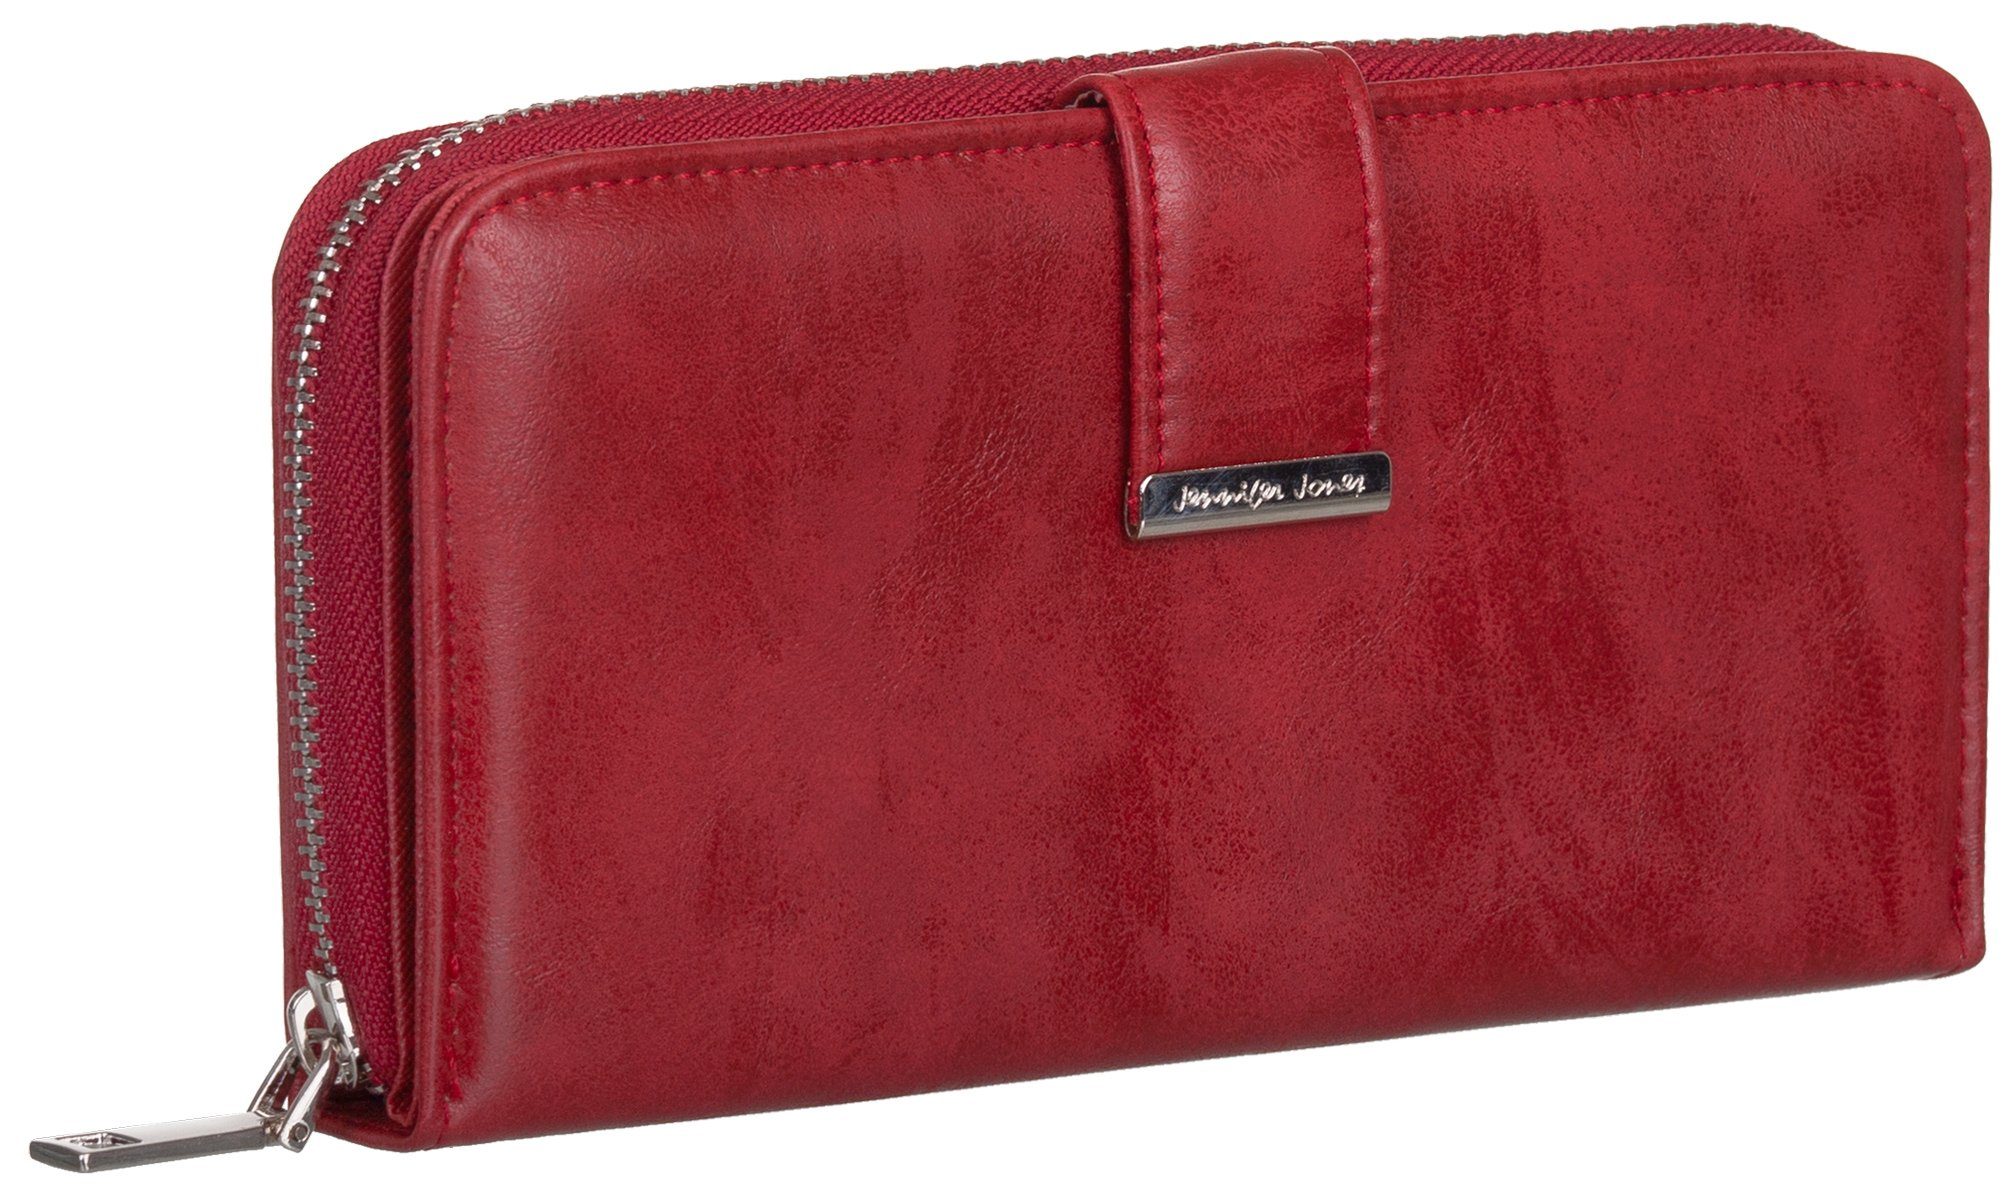 Jennifer Jones Geldbörse, Damen Geldbörse klappbar mit Reißverschluss Portemonnaie Geldbeutel